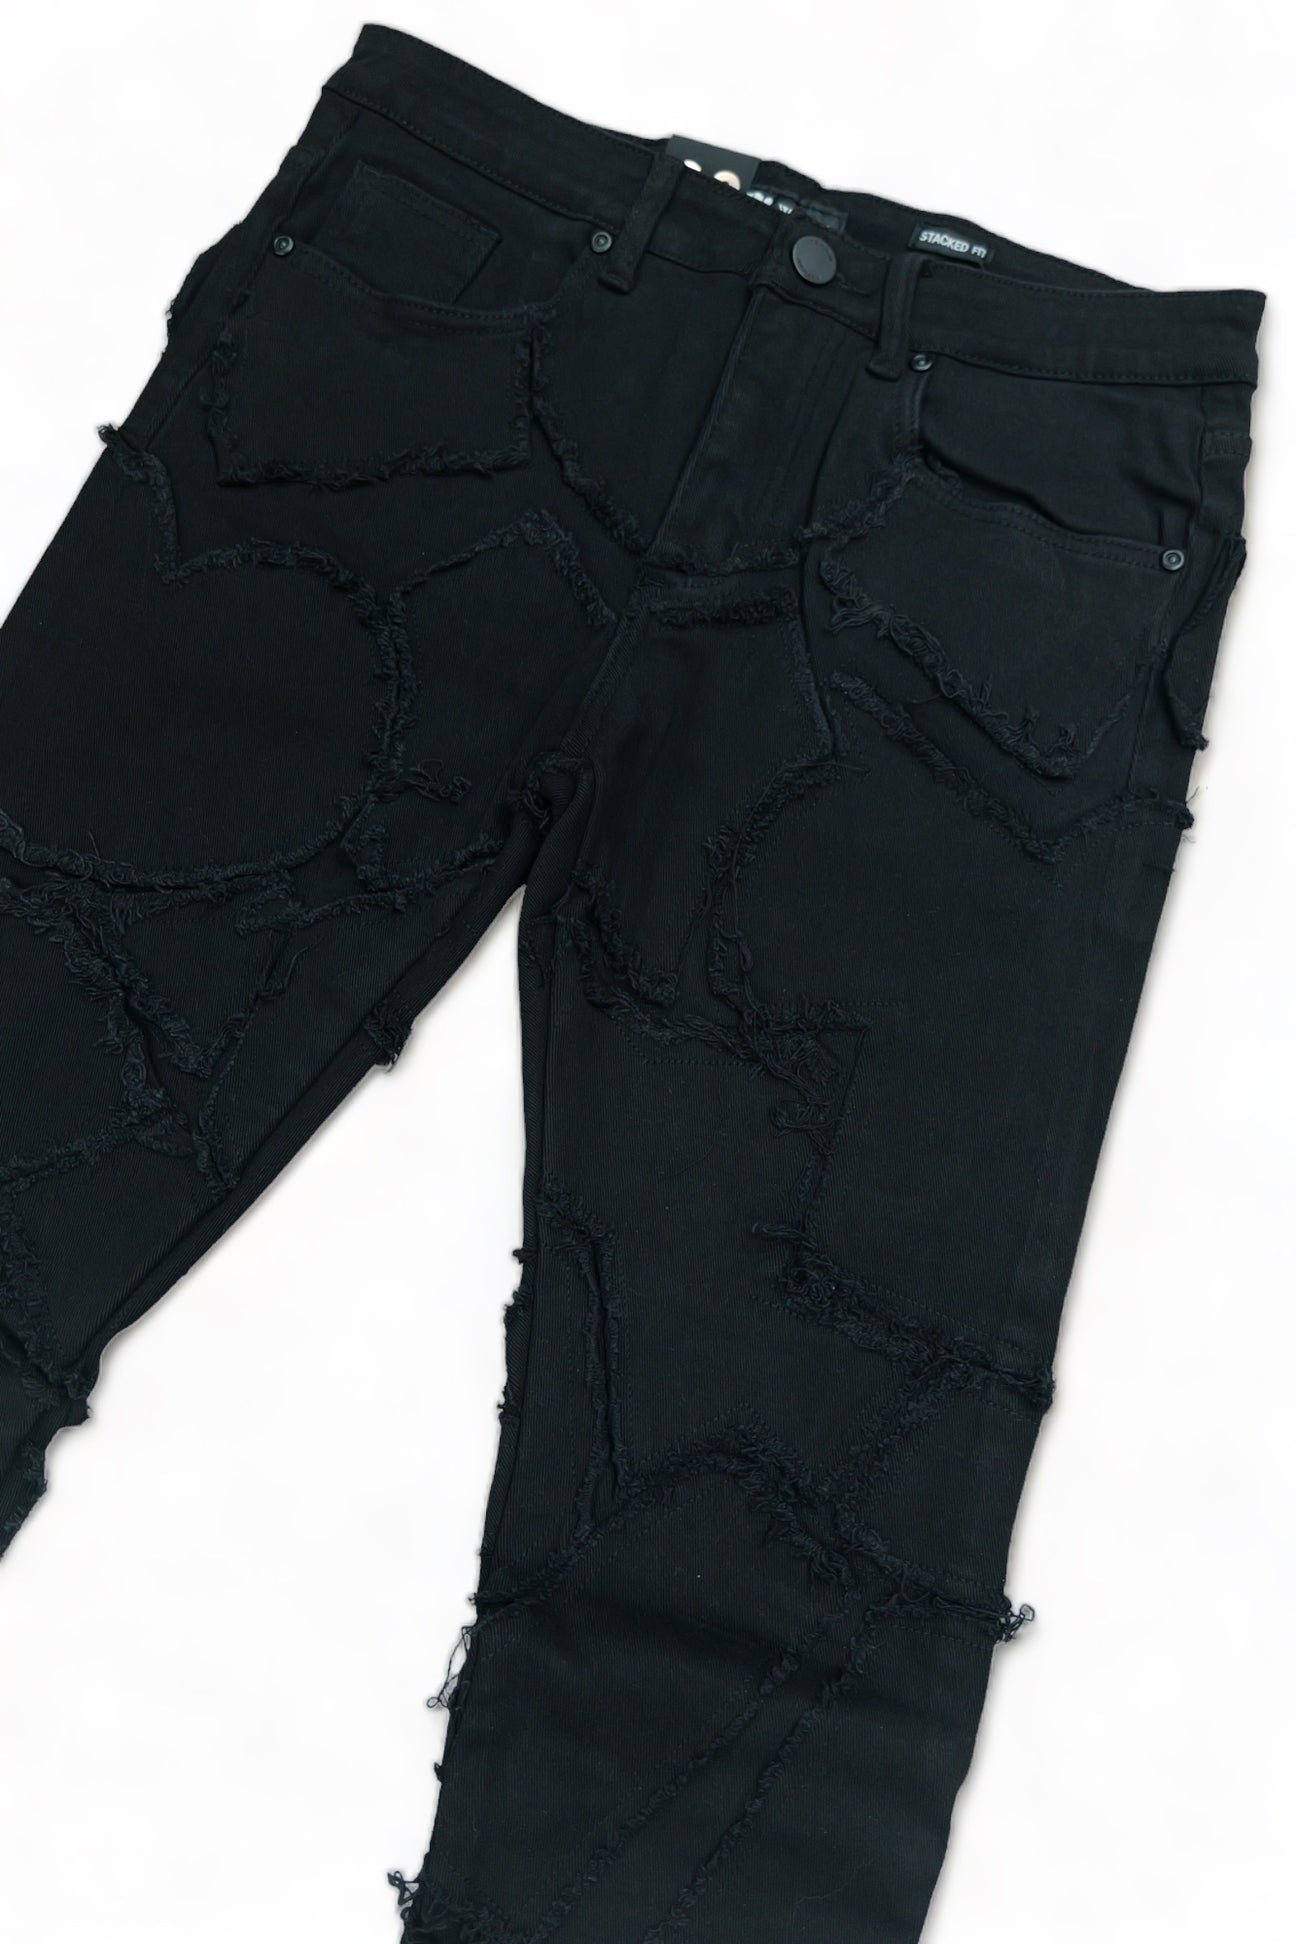 Waimea Black Stacked Jeans